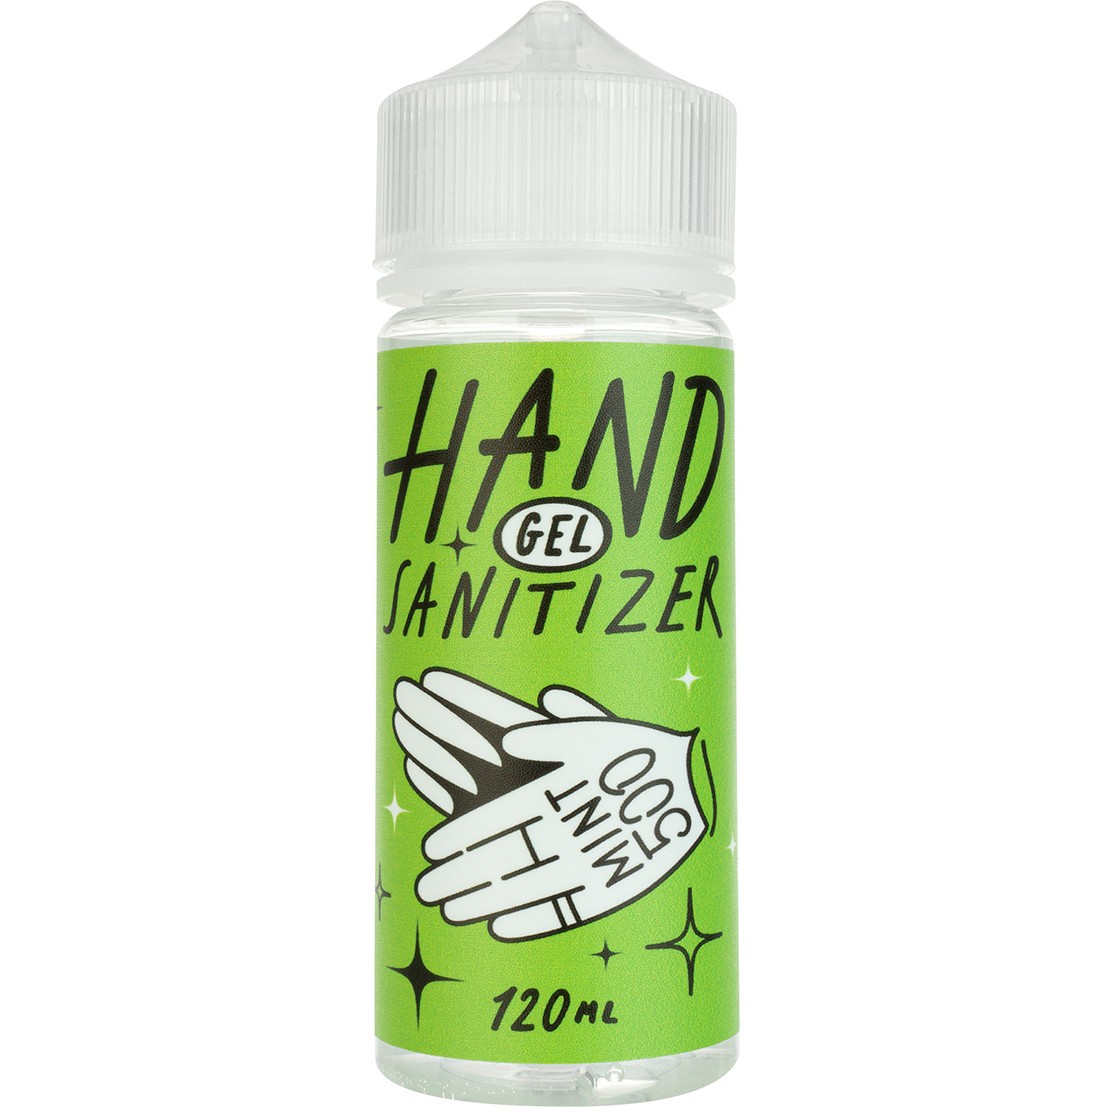 Mint500 Hand Sanitizer Gel - Антибактериальный гель для рук с запахом ванили, 120 мл - фото 1